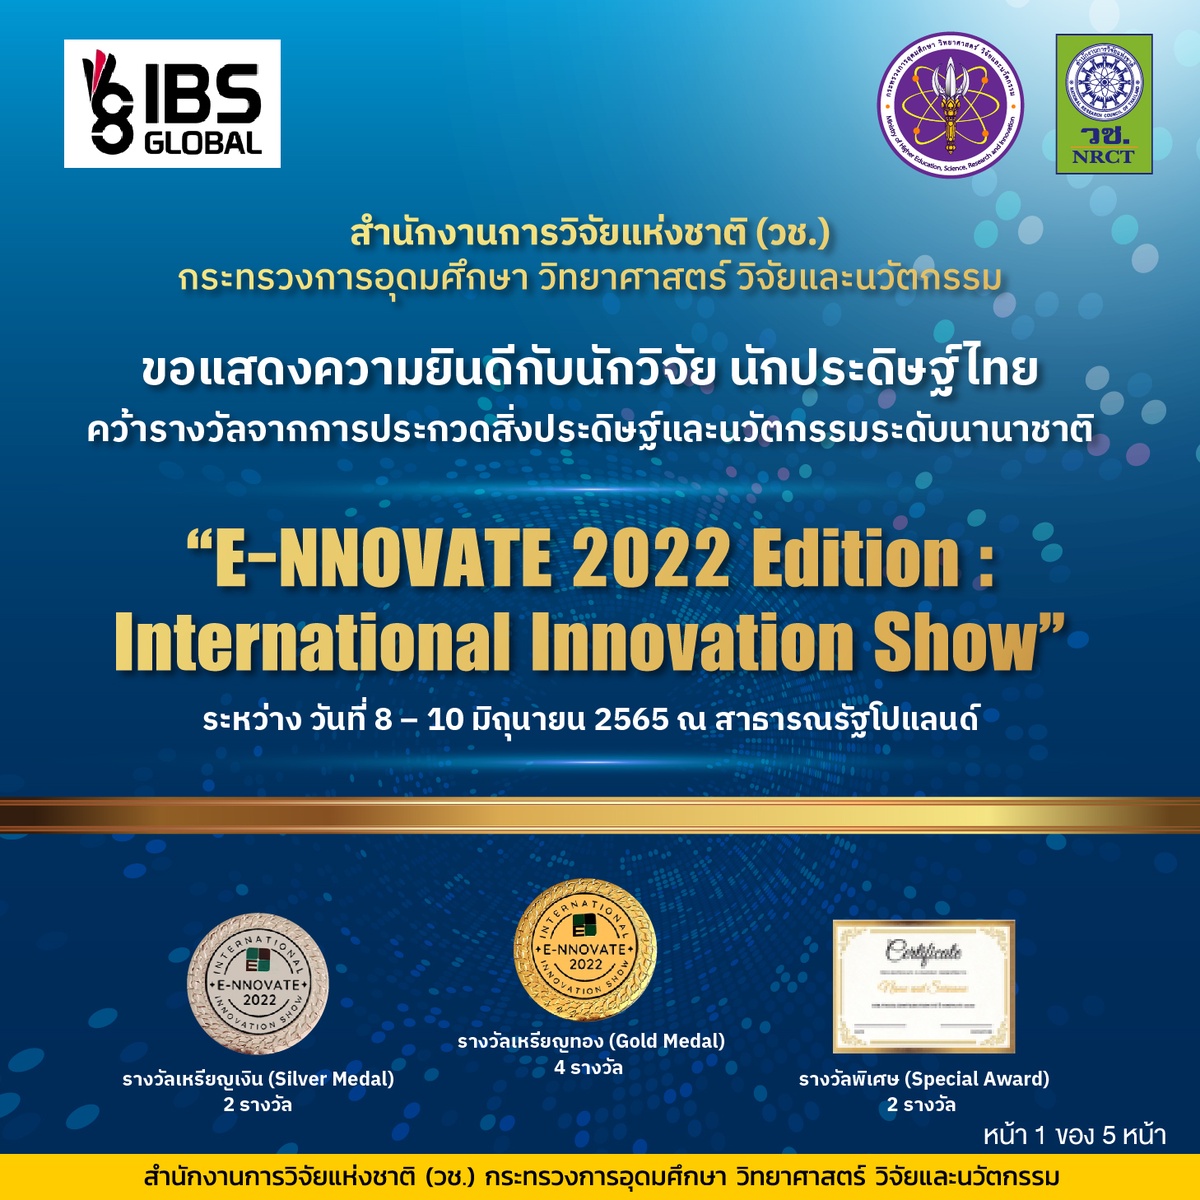 วช. นำคณะนักประดิษฐ์/นักวิจัยไทย คว้ารางวัลการประกวดสิ่งประดิษฐ์และนวัตกรรมระดับนานาชาติในงาน E-NNOVATE